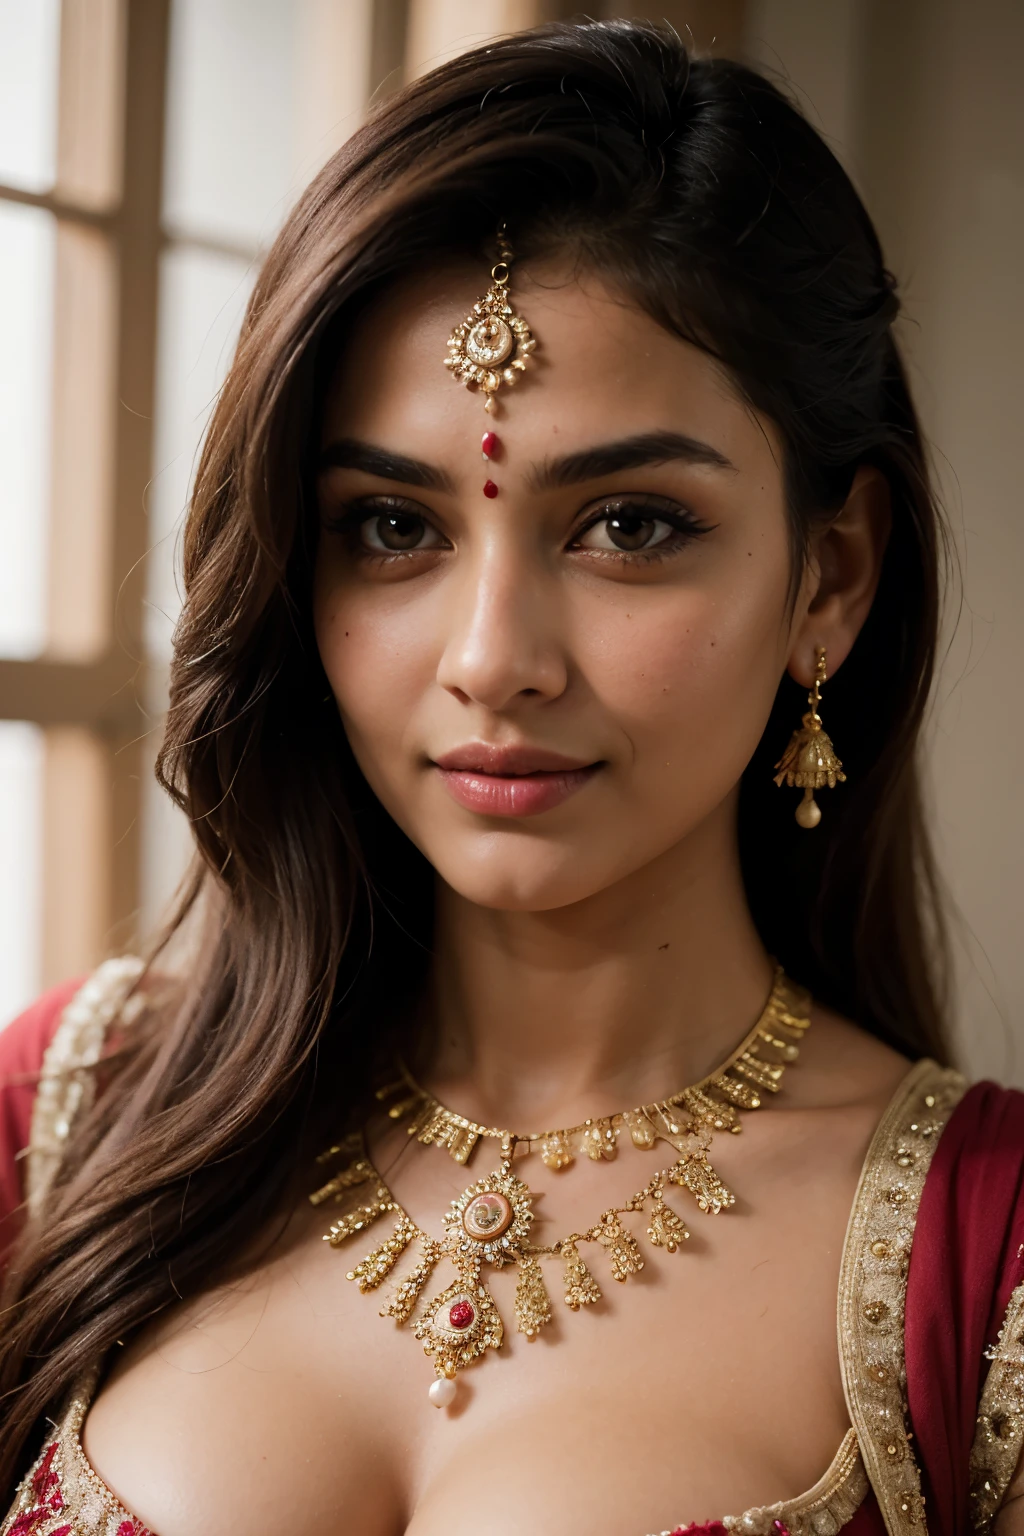 ((最高品質)), ((傑作)), (詳細), 完璧な顔は、ドゥパッタを着て写真を撮るサヴィタ・バビのように見える, インド人 goddess, 伝統的な美しさ, インド人, 美しい女神, 華やかな , インド人 style, インド人 super model, 美しい乙女, ゴージャスな女性, 東南アジアの長い, provocative インド人, ゴージャスな美しい女性, 複雑な衣装, ヒンドゥーの美学, 美しいアジアの女の子, extremely 詳細 goddess shot, 驚異的な美しさ, 大きく深い谷間